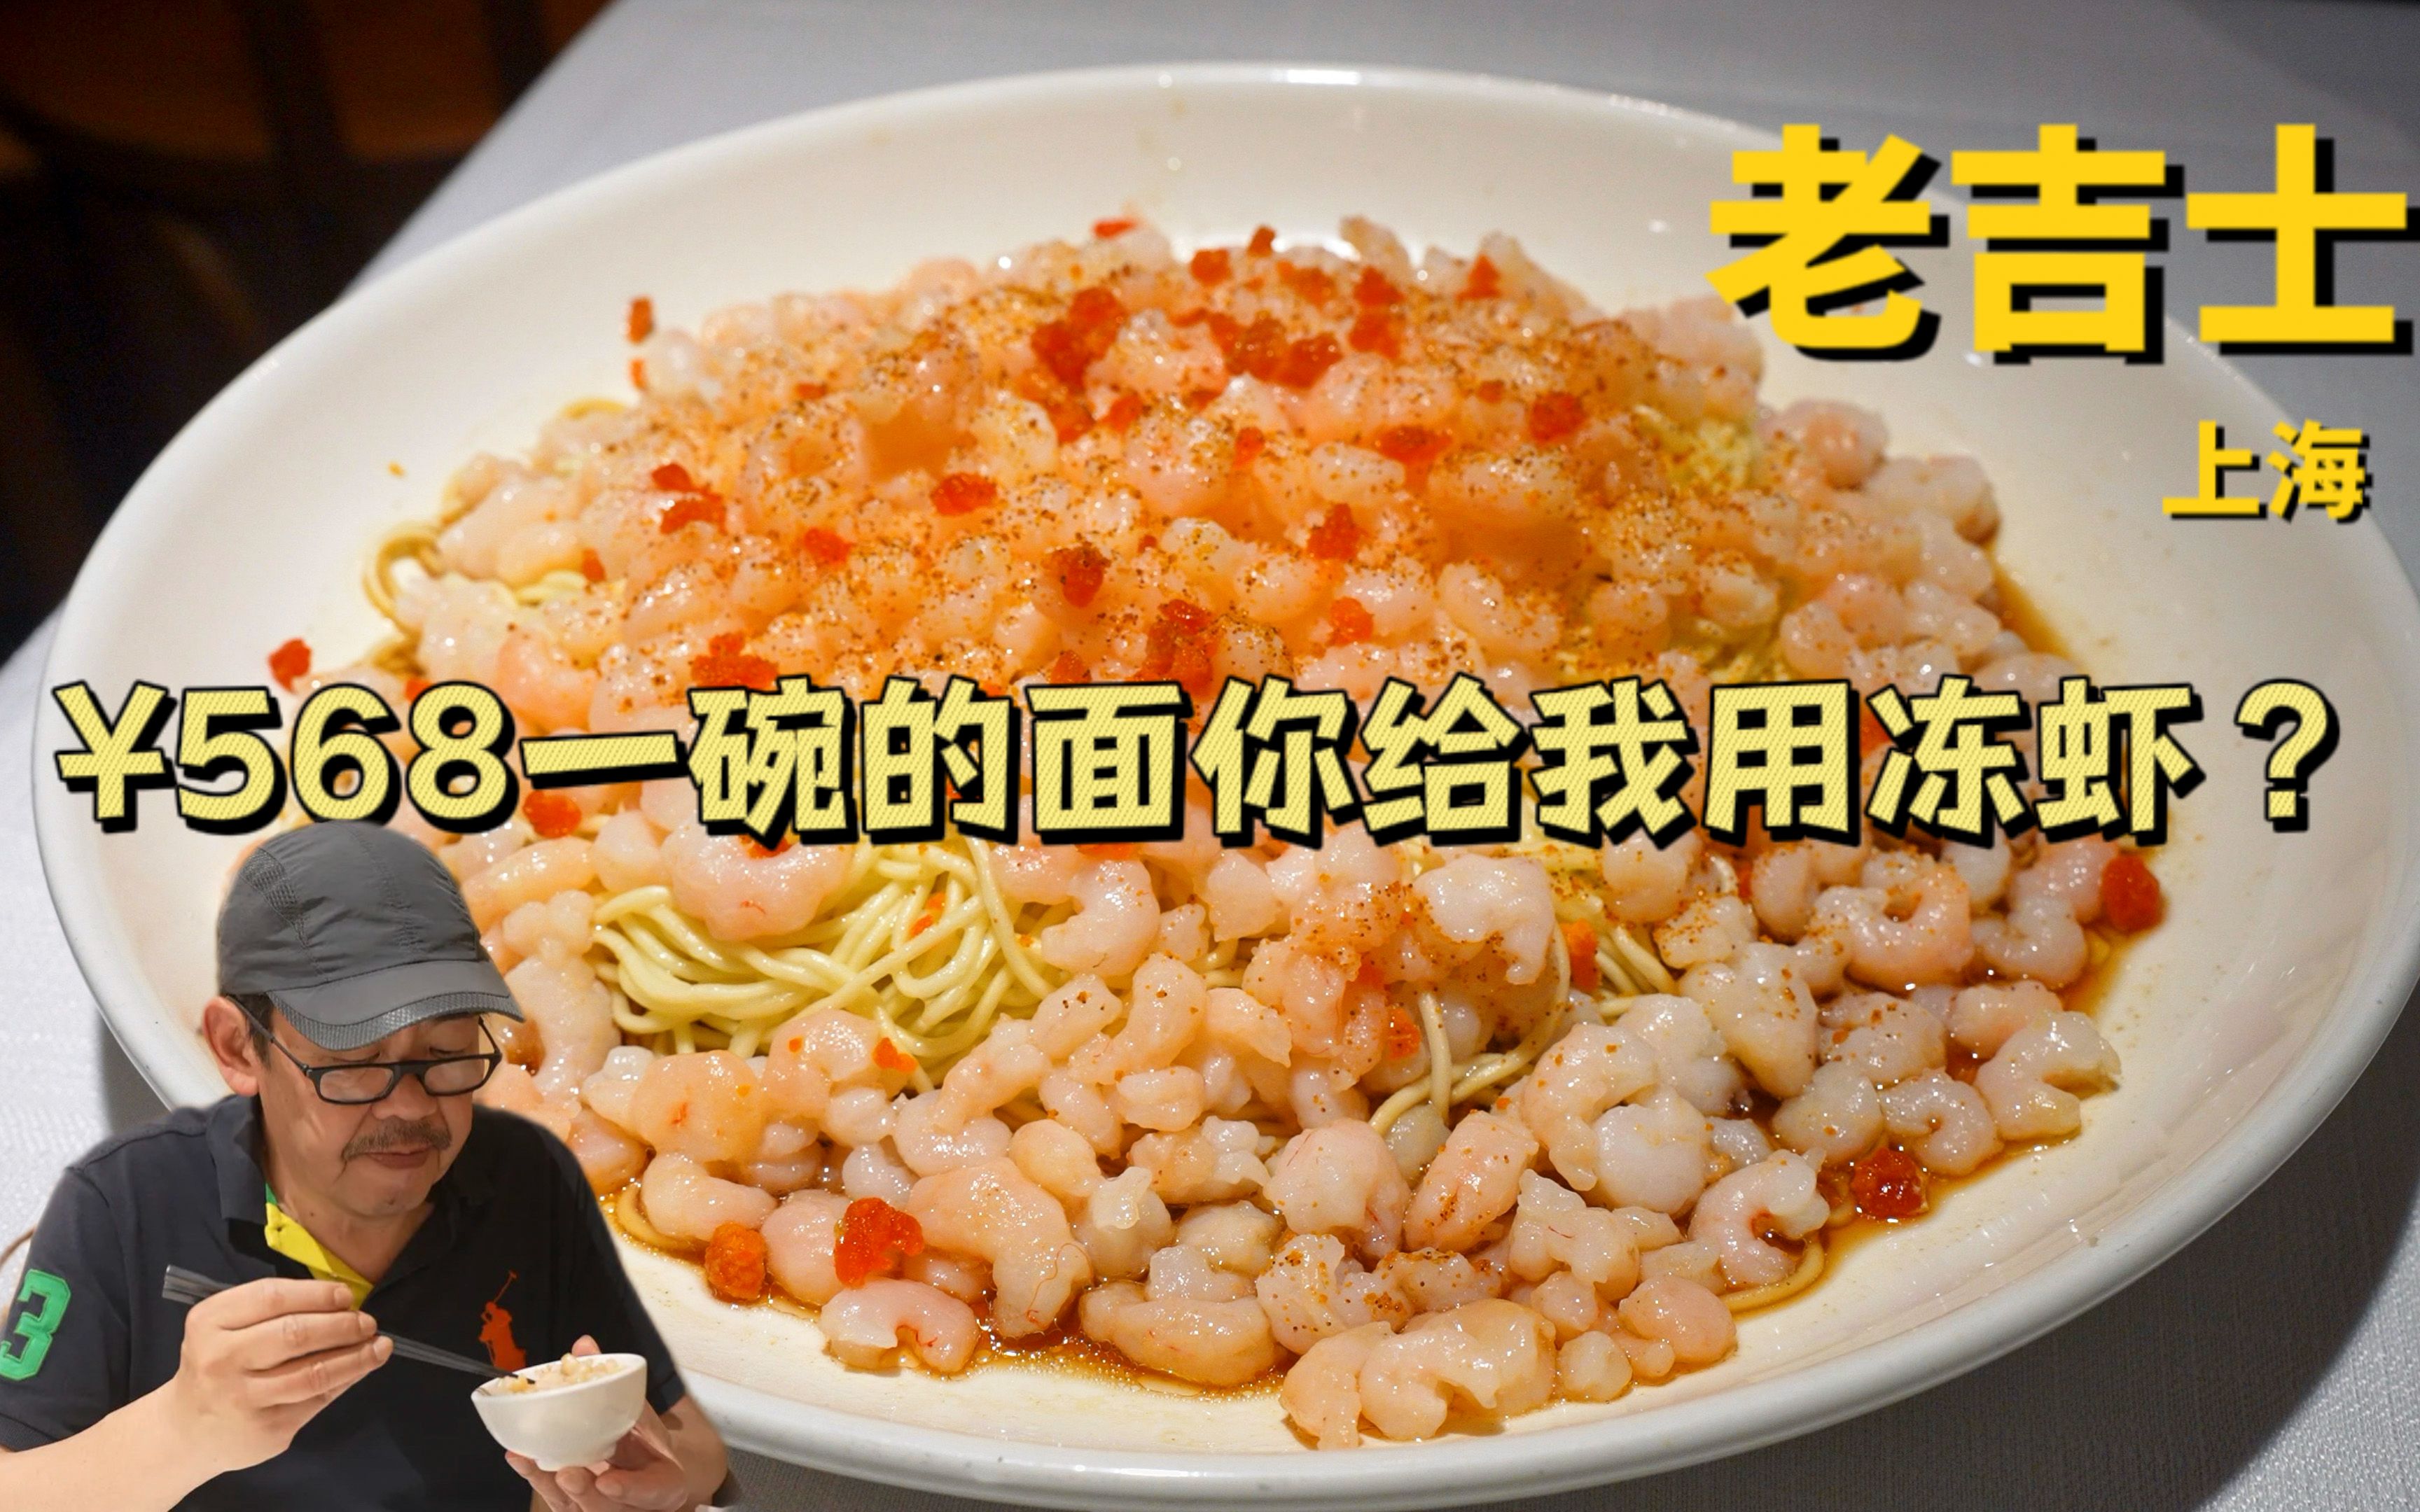 卖568一碗的面用的竟然是冻虾——上海本帮菜第一名老吉士